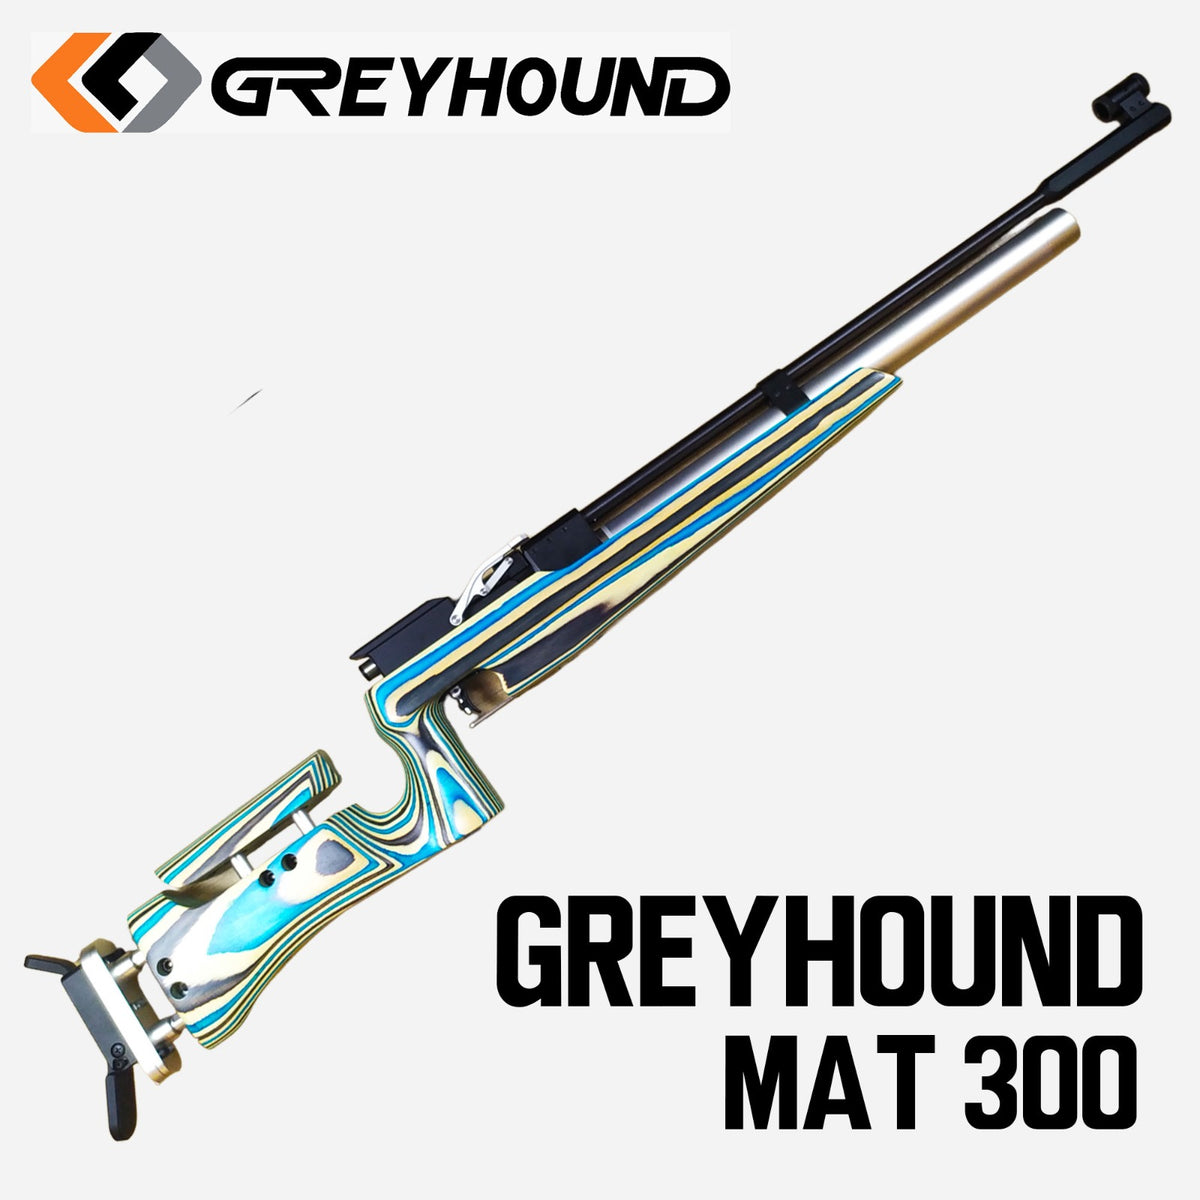 GREYHOUND MAT 300